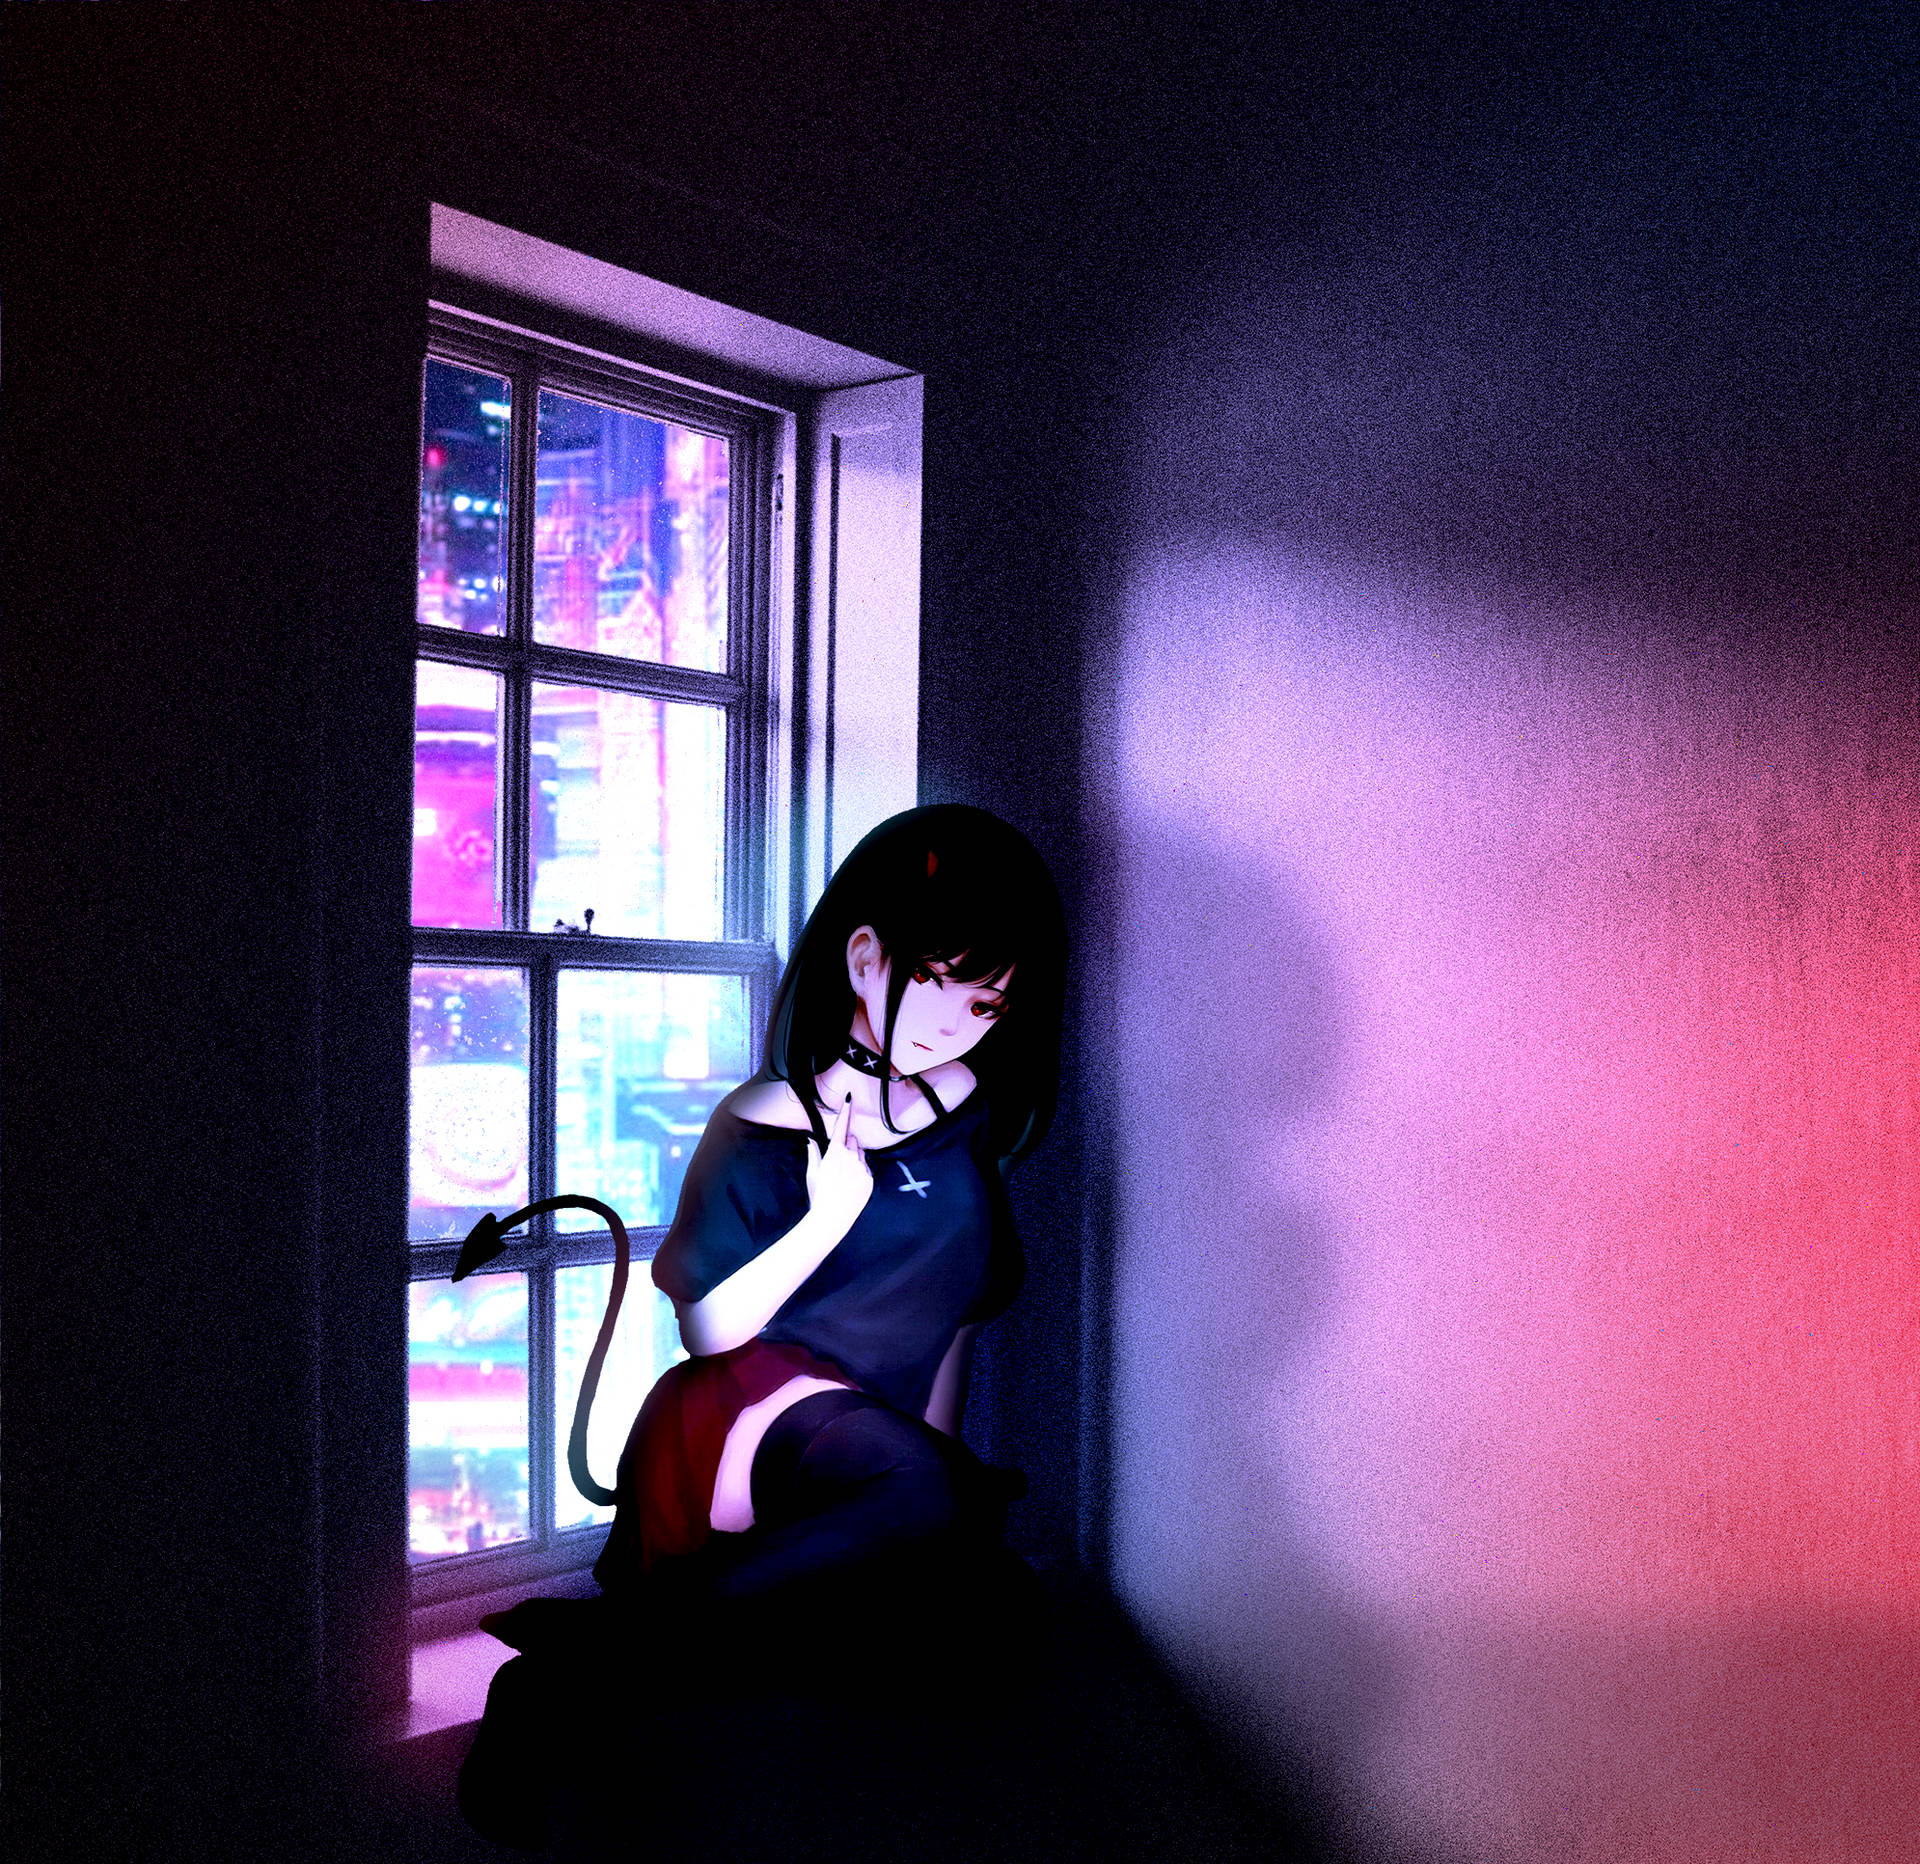 En pige sidder i et vindue med et rødt lys, der skinner på hende. Wallpaper